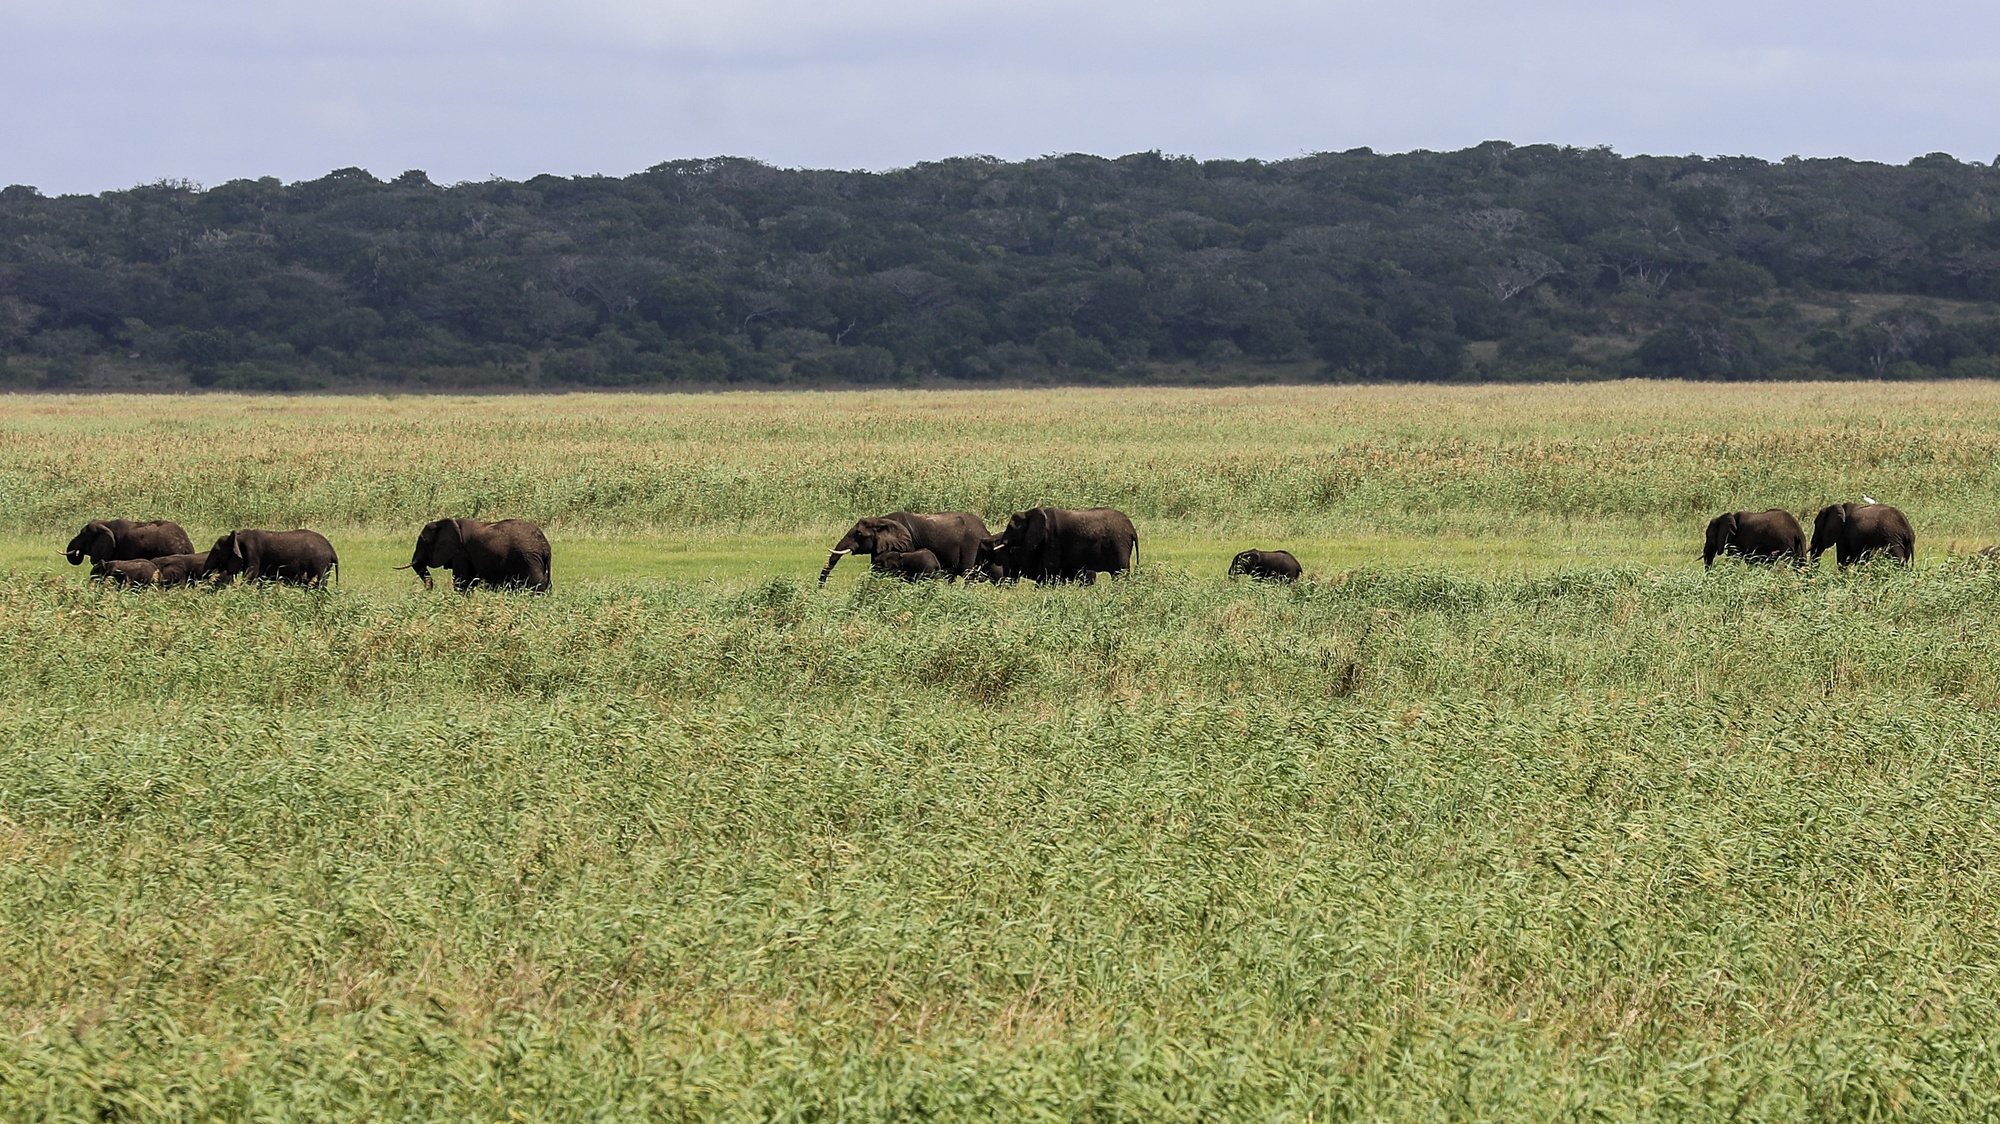 O Parque Nacional de Maputo, reserva protegida a 70 quilómetros da capital moçambicana, registou em 2023 um recorde de cerca de 20.000 visitantes, disse à Lusa o administrador, Miguel Gonçalves, justificando o crescimento com a recuperação e os investimentos em curso, Maputo, 12 de abril de 2024. Com as emblemáticas girafas e elefantes que se passeiam habitualmente junto à estrada Nacional 1 (N1), o Parque Nacional de Maputo beneficia da proximidade às cidades sul-africanas de Durban e Joanesburgo, combina “mar e terra” e desde 2018, com a inauguração da ponte de Katembe, facilitando a ligação da capital para sul, que a procura não para de crescer. (ACOMPANHA TEXTO DE DIA 15 DE ABRIL DE 2024). PAULO JULIÃO/LUSA